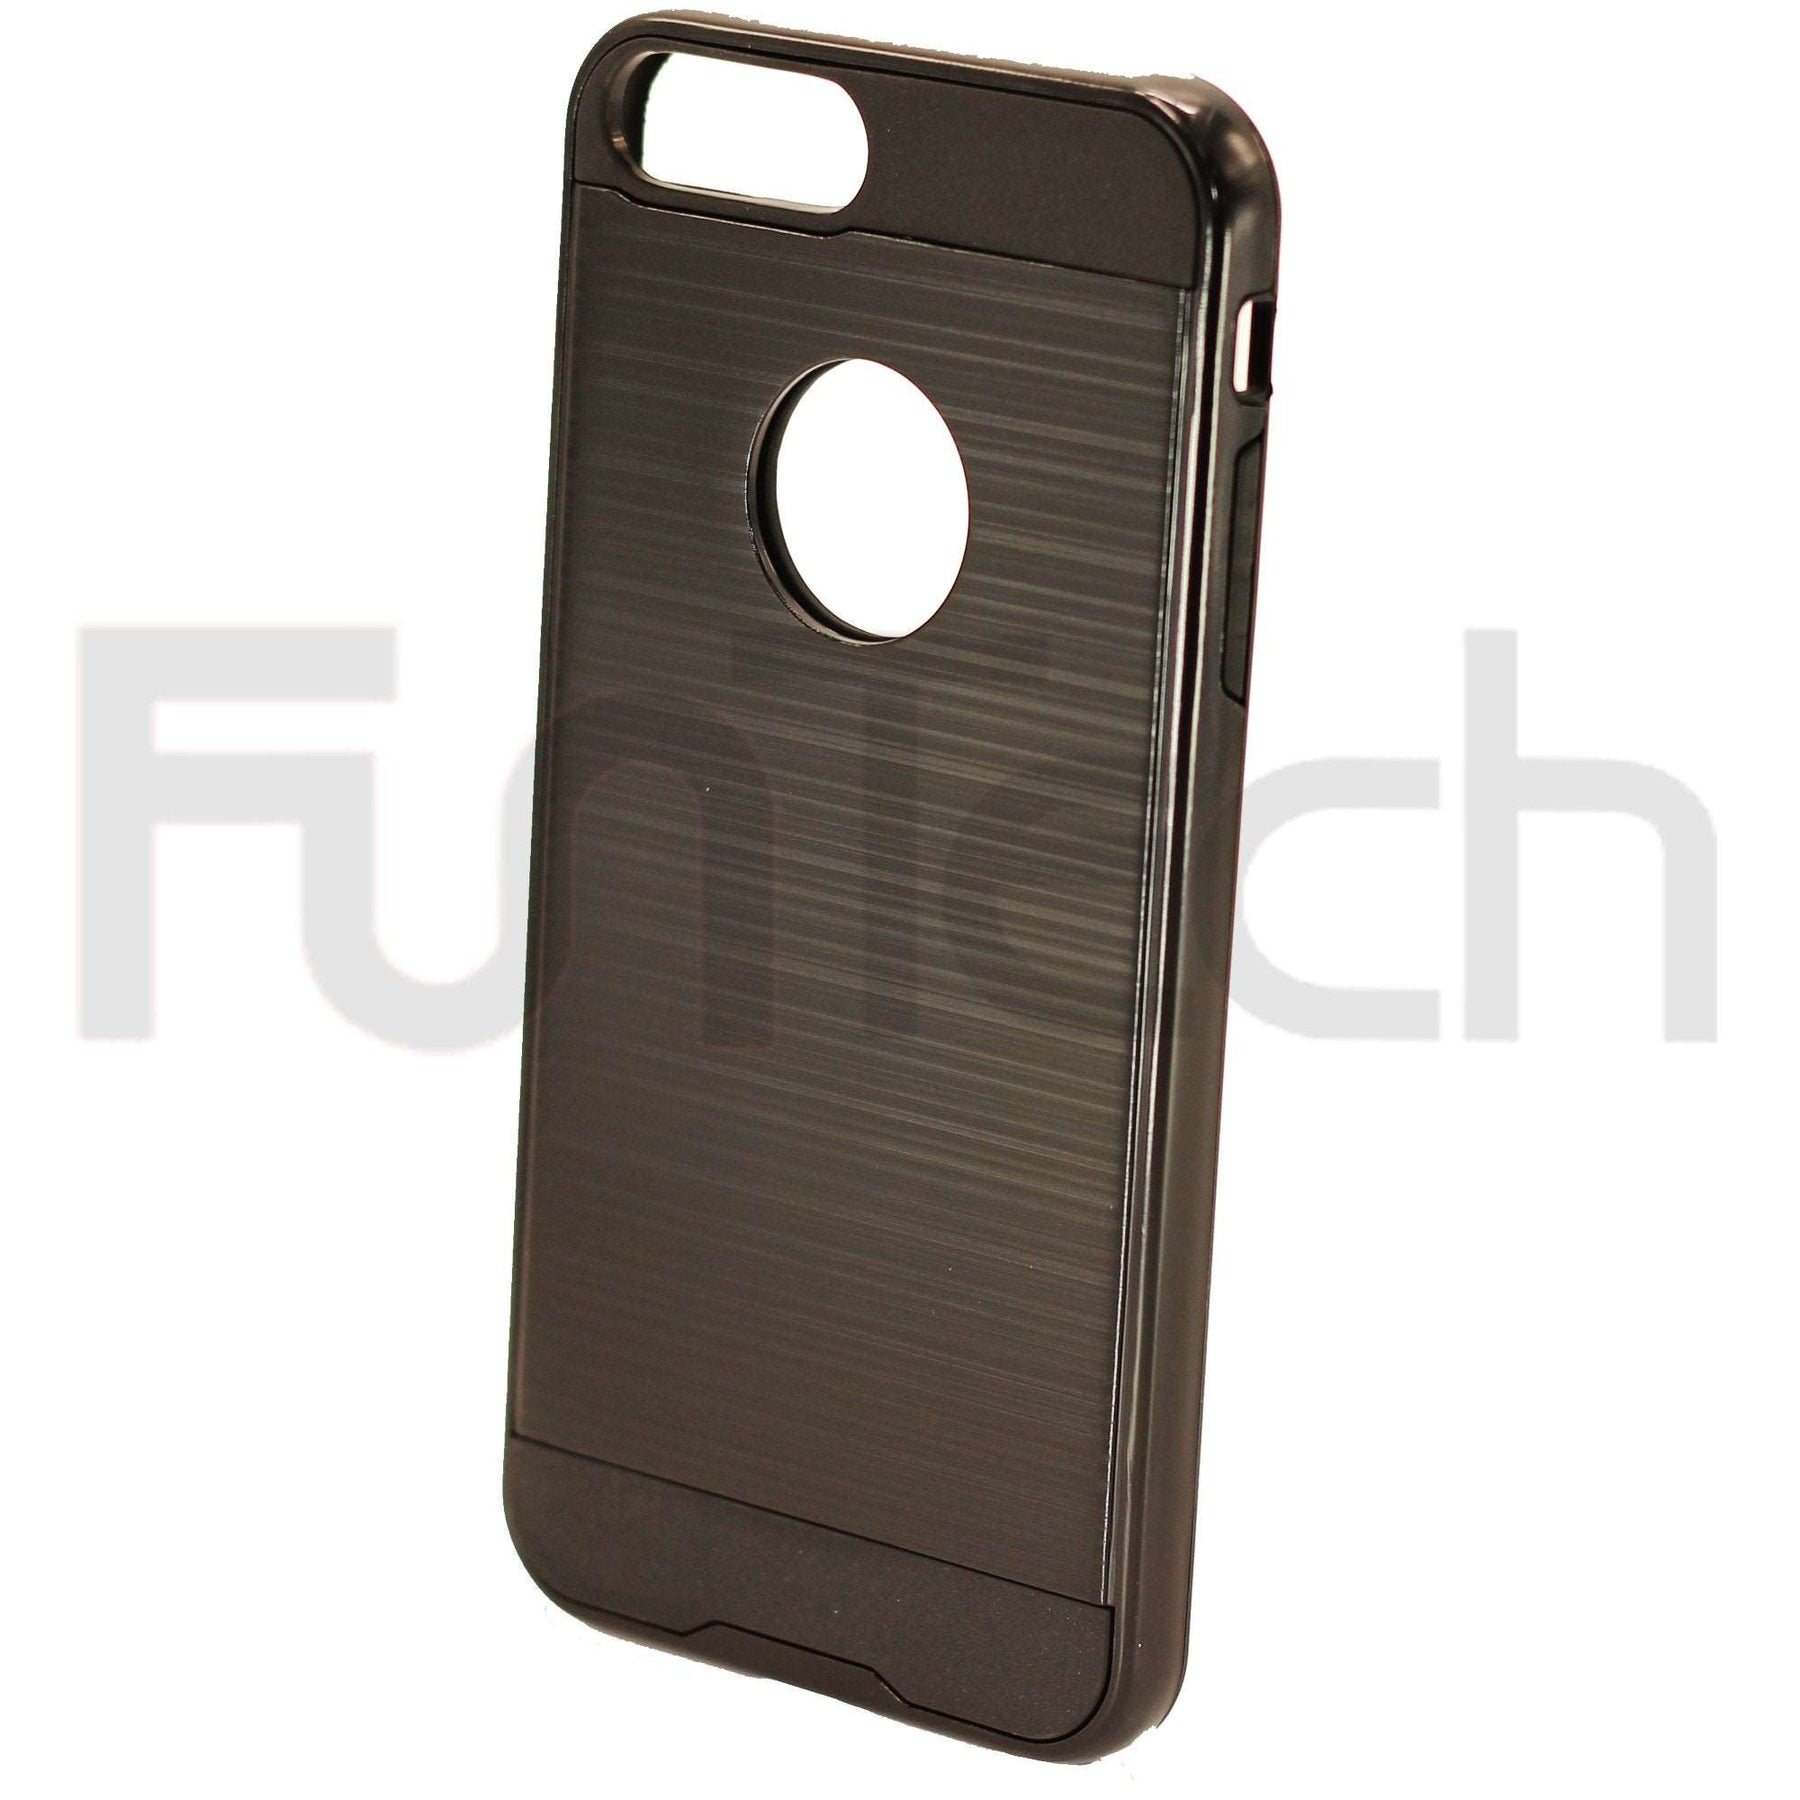 Apple iPhone 7/8 Plus Slim Armor Case Black